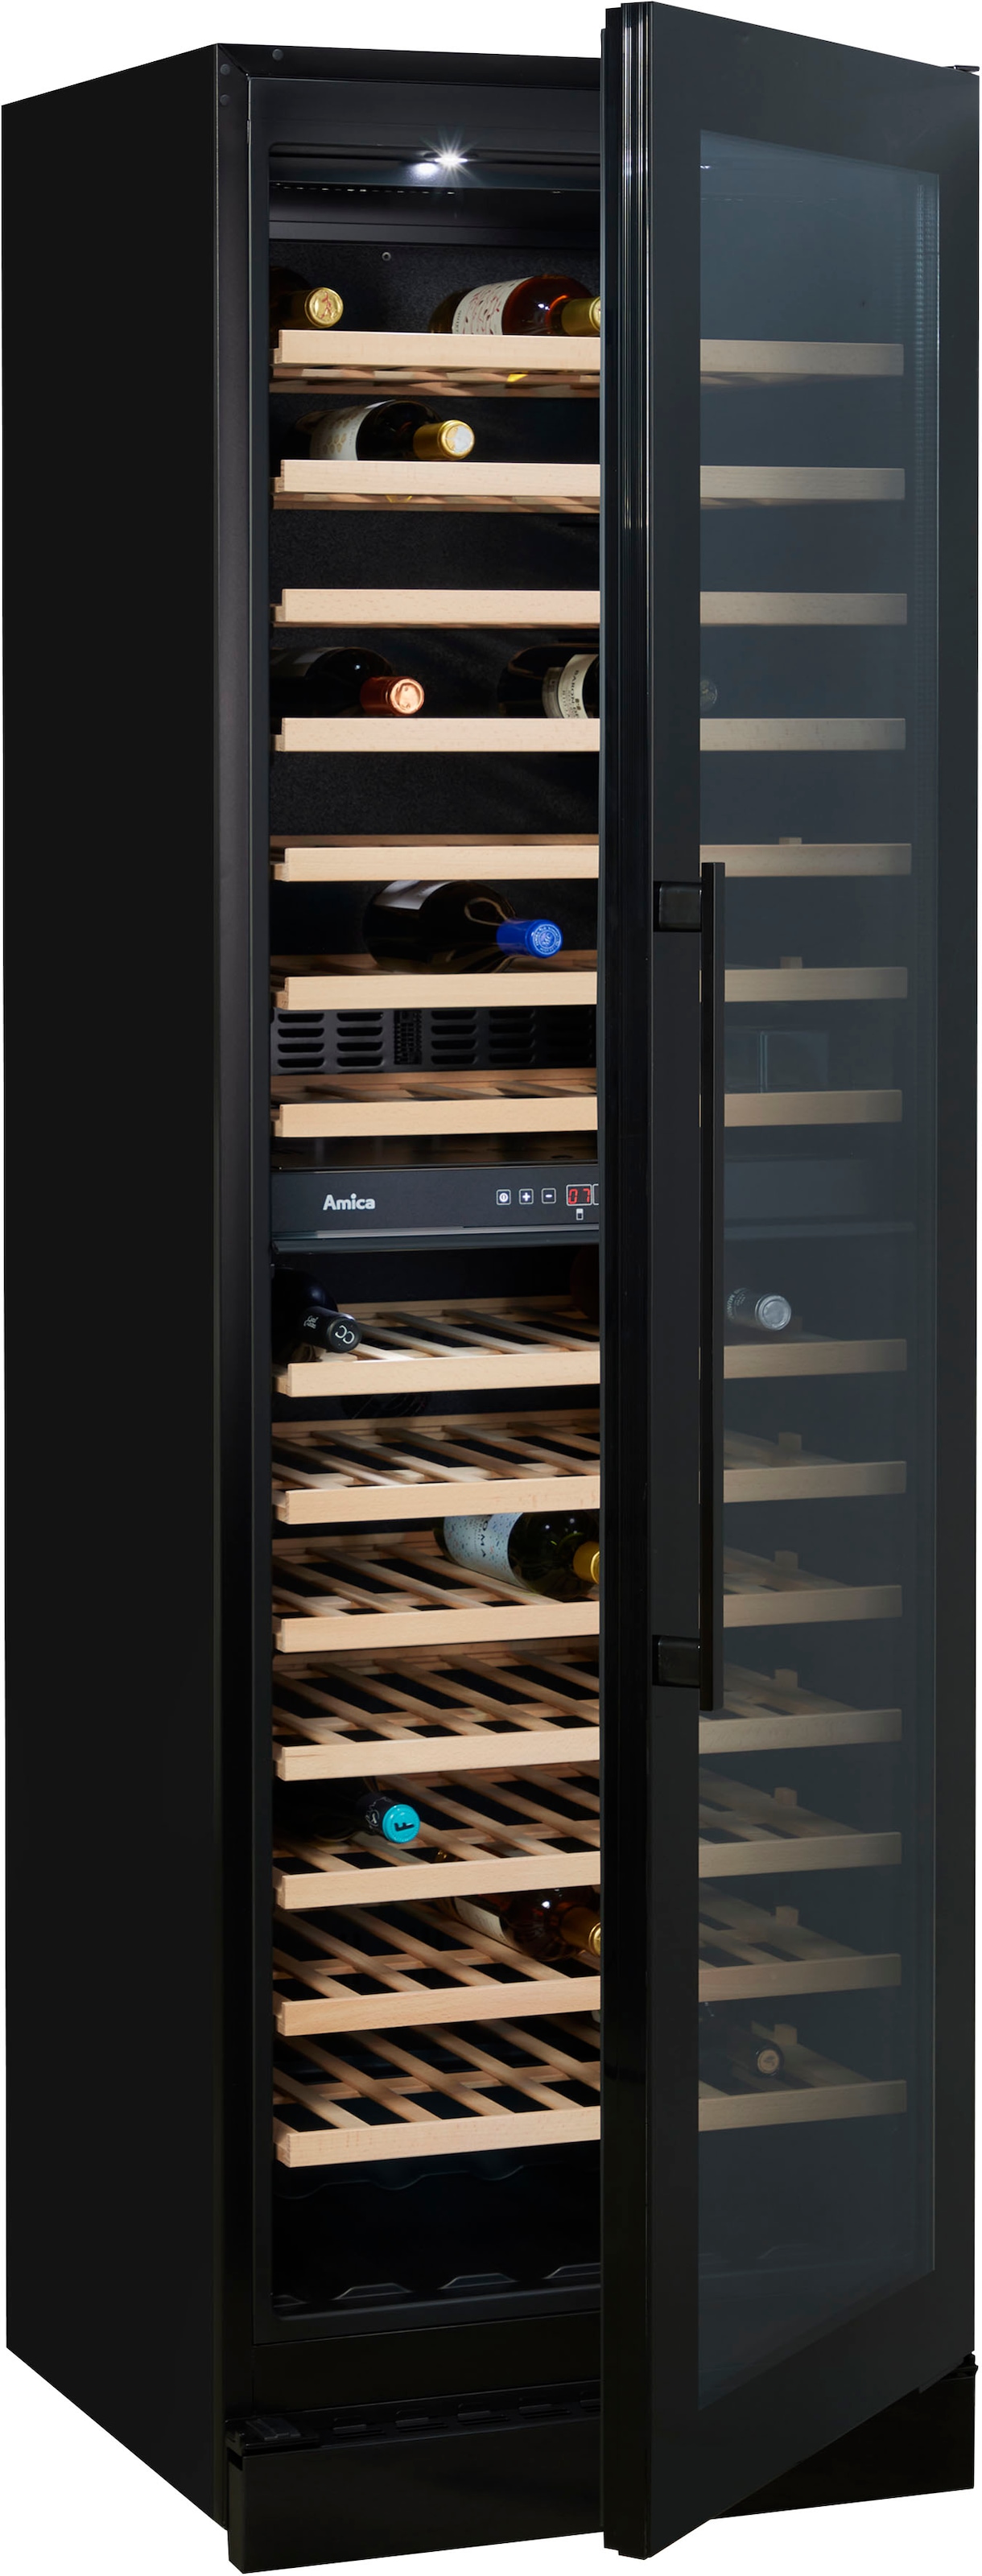 Weinkühlschrank für 100 á Standkühlschrank 0,75l, OTTO »WK 348 117 Amica kaufen Standardflaschen S«, bei